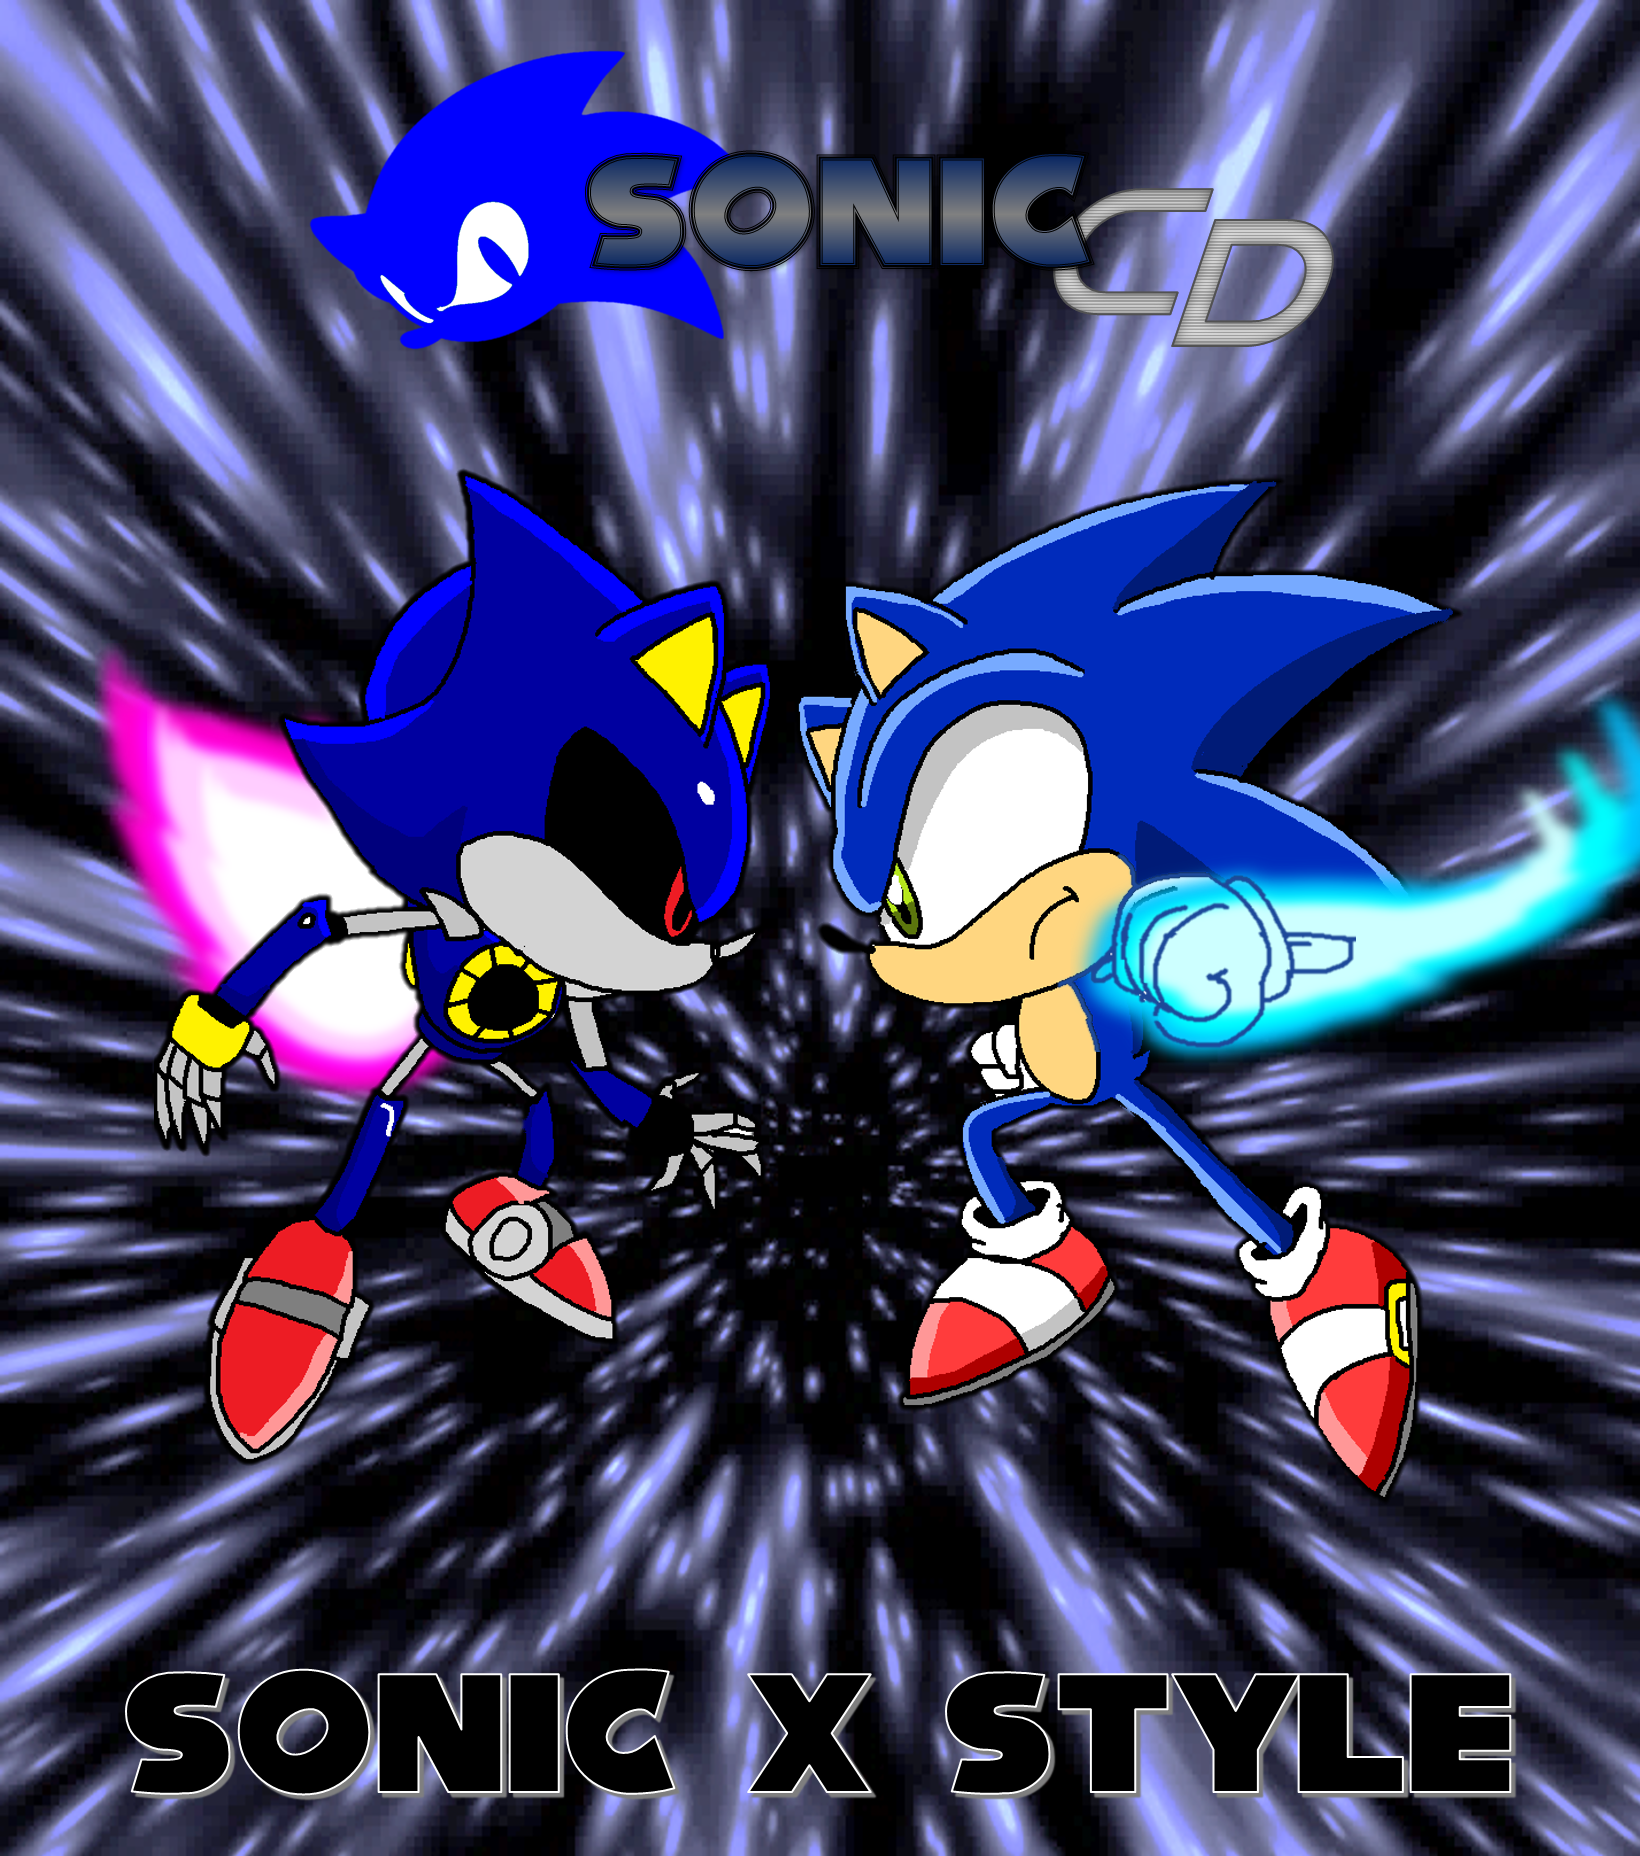 Metal Sonic (Sonic CD) by Angry-Araki on Newgrounds